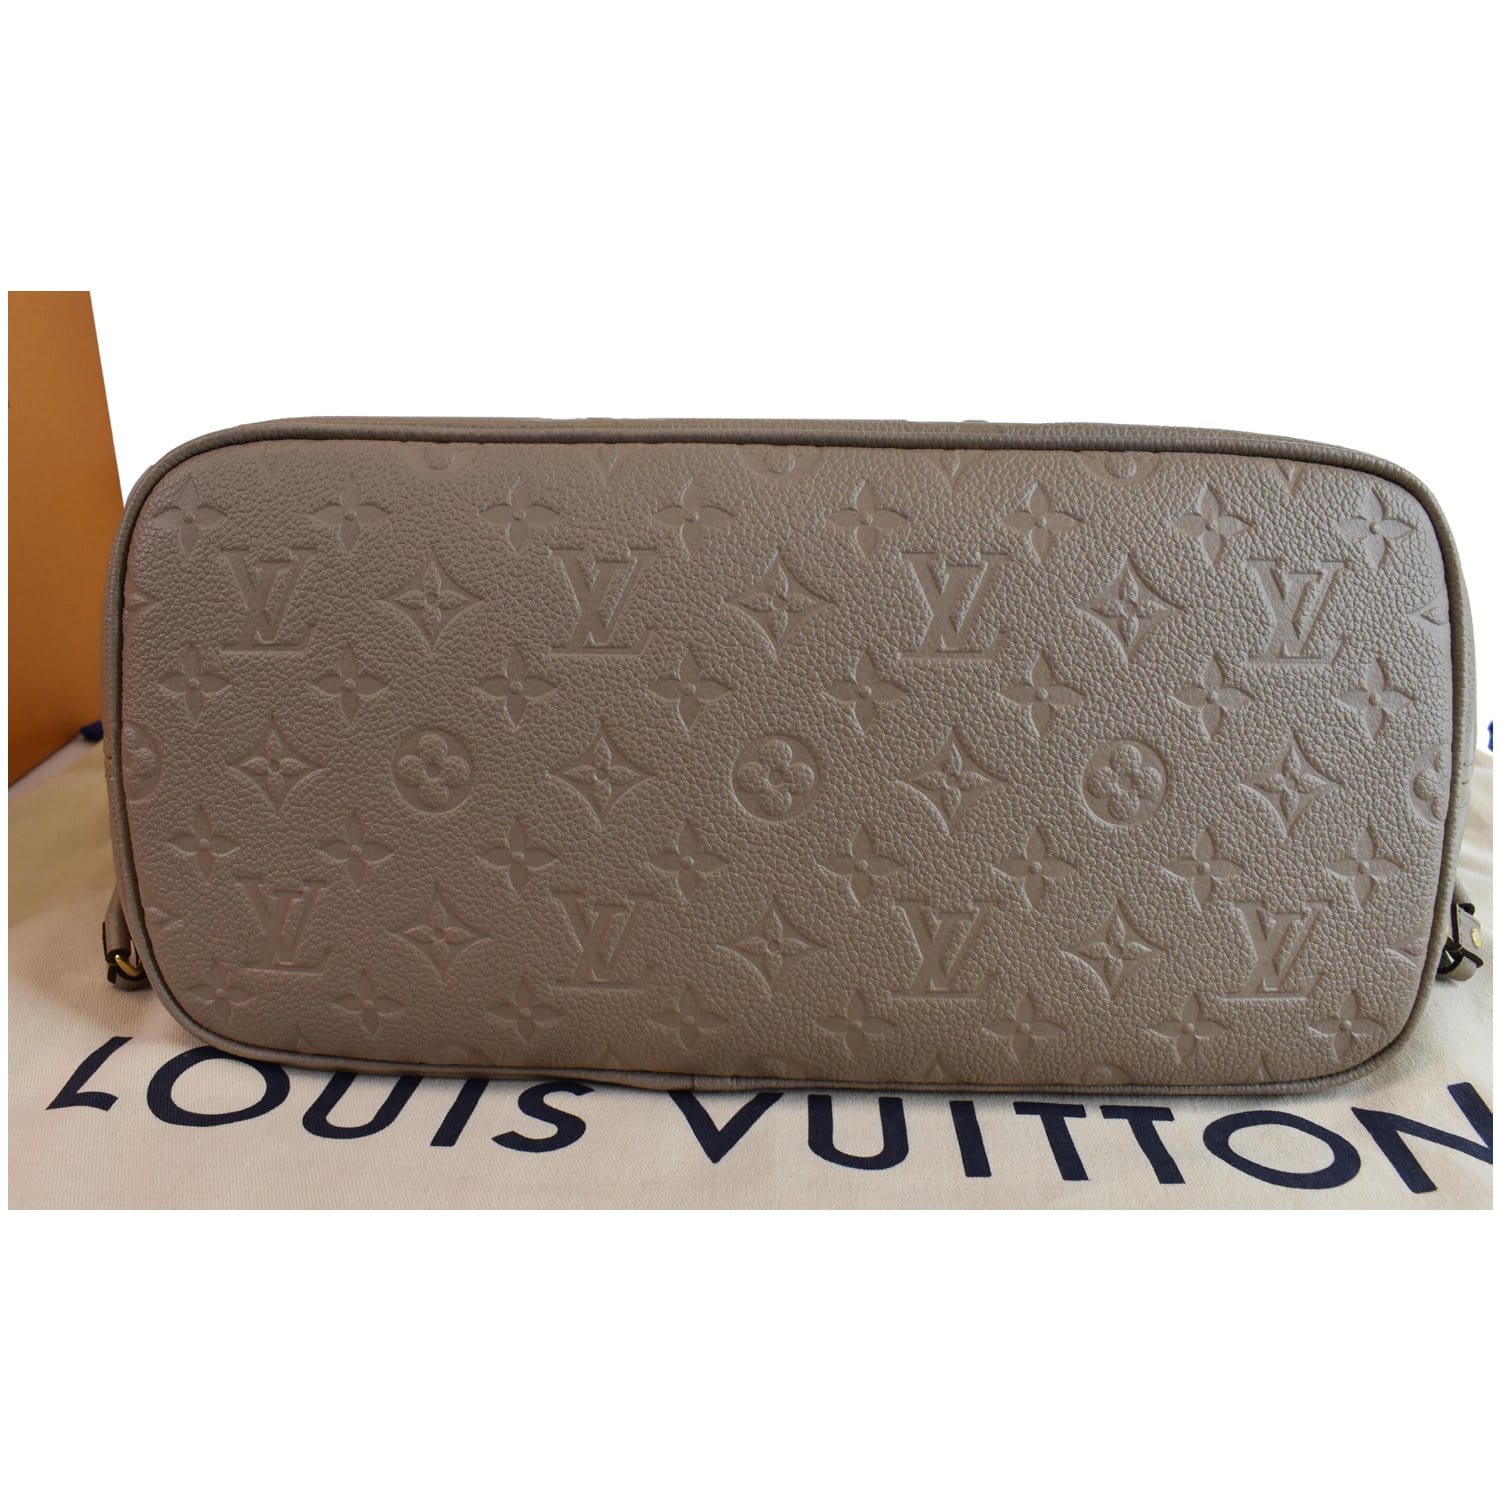 Louis Vuitton Limited Beige Monogram Empreinte Neverfull Pochette mm or GM 46lk32